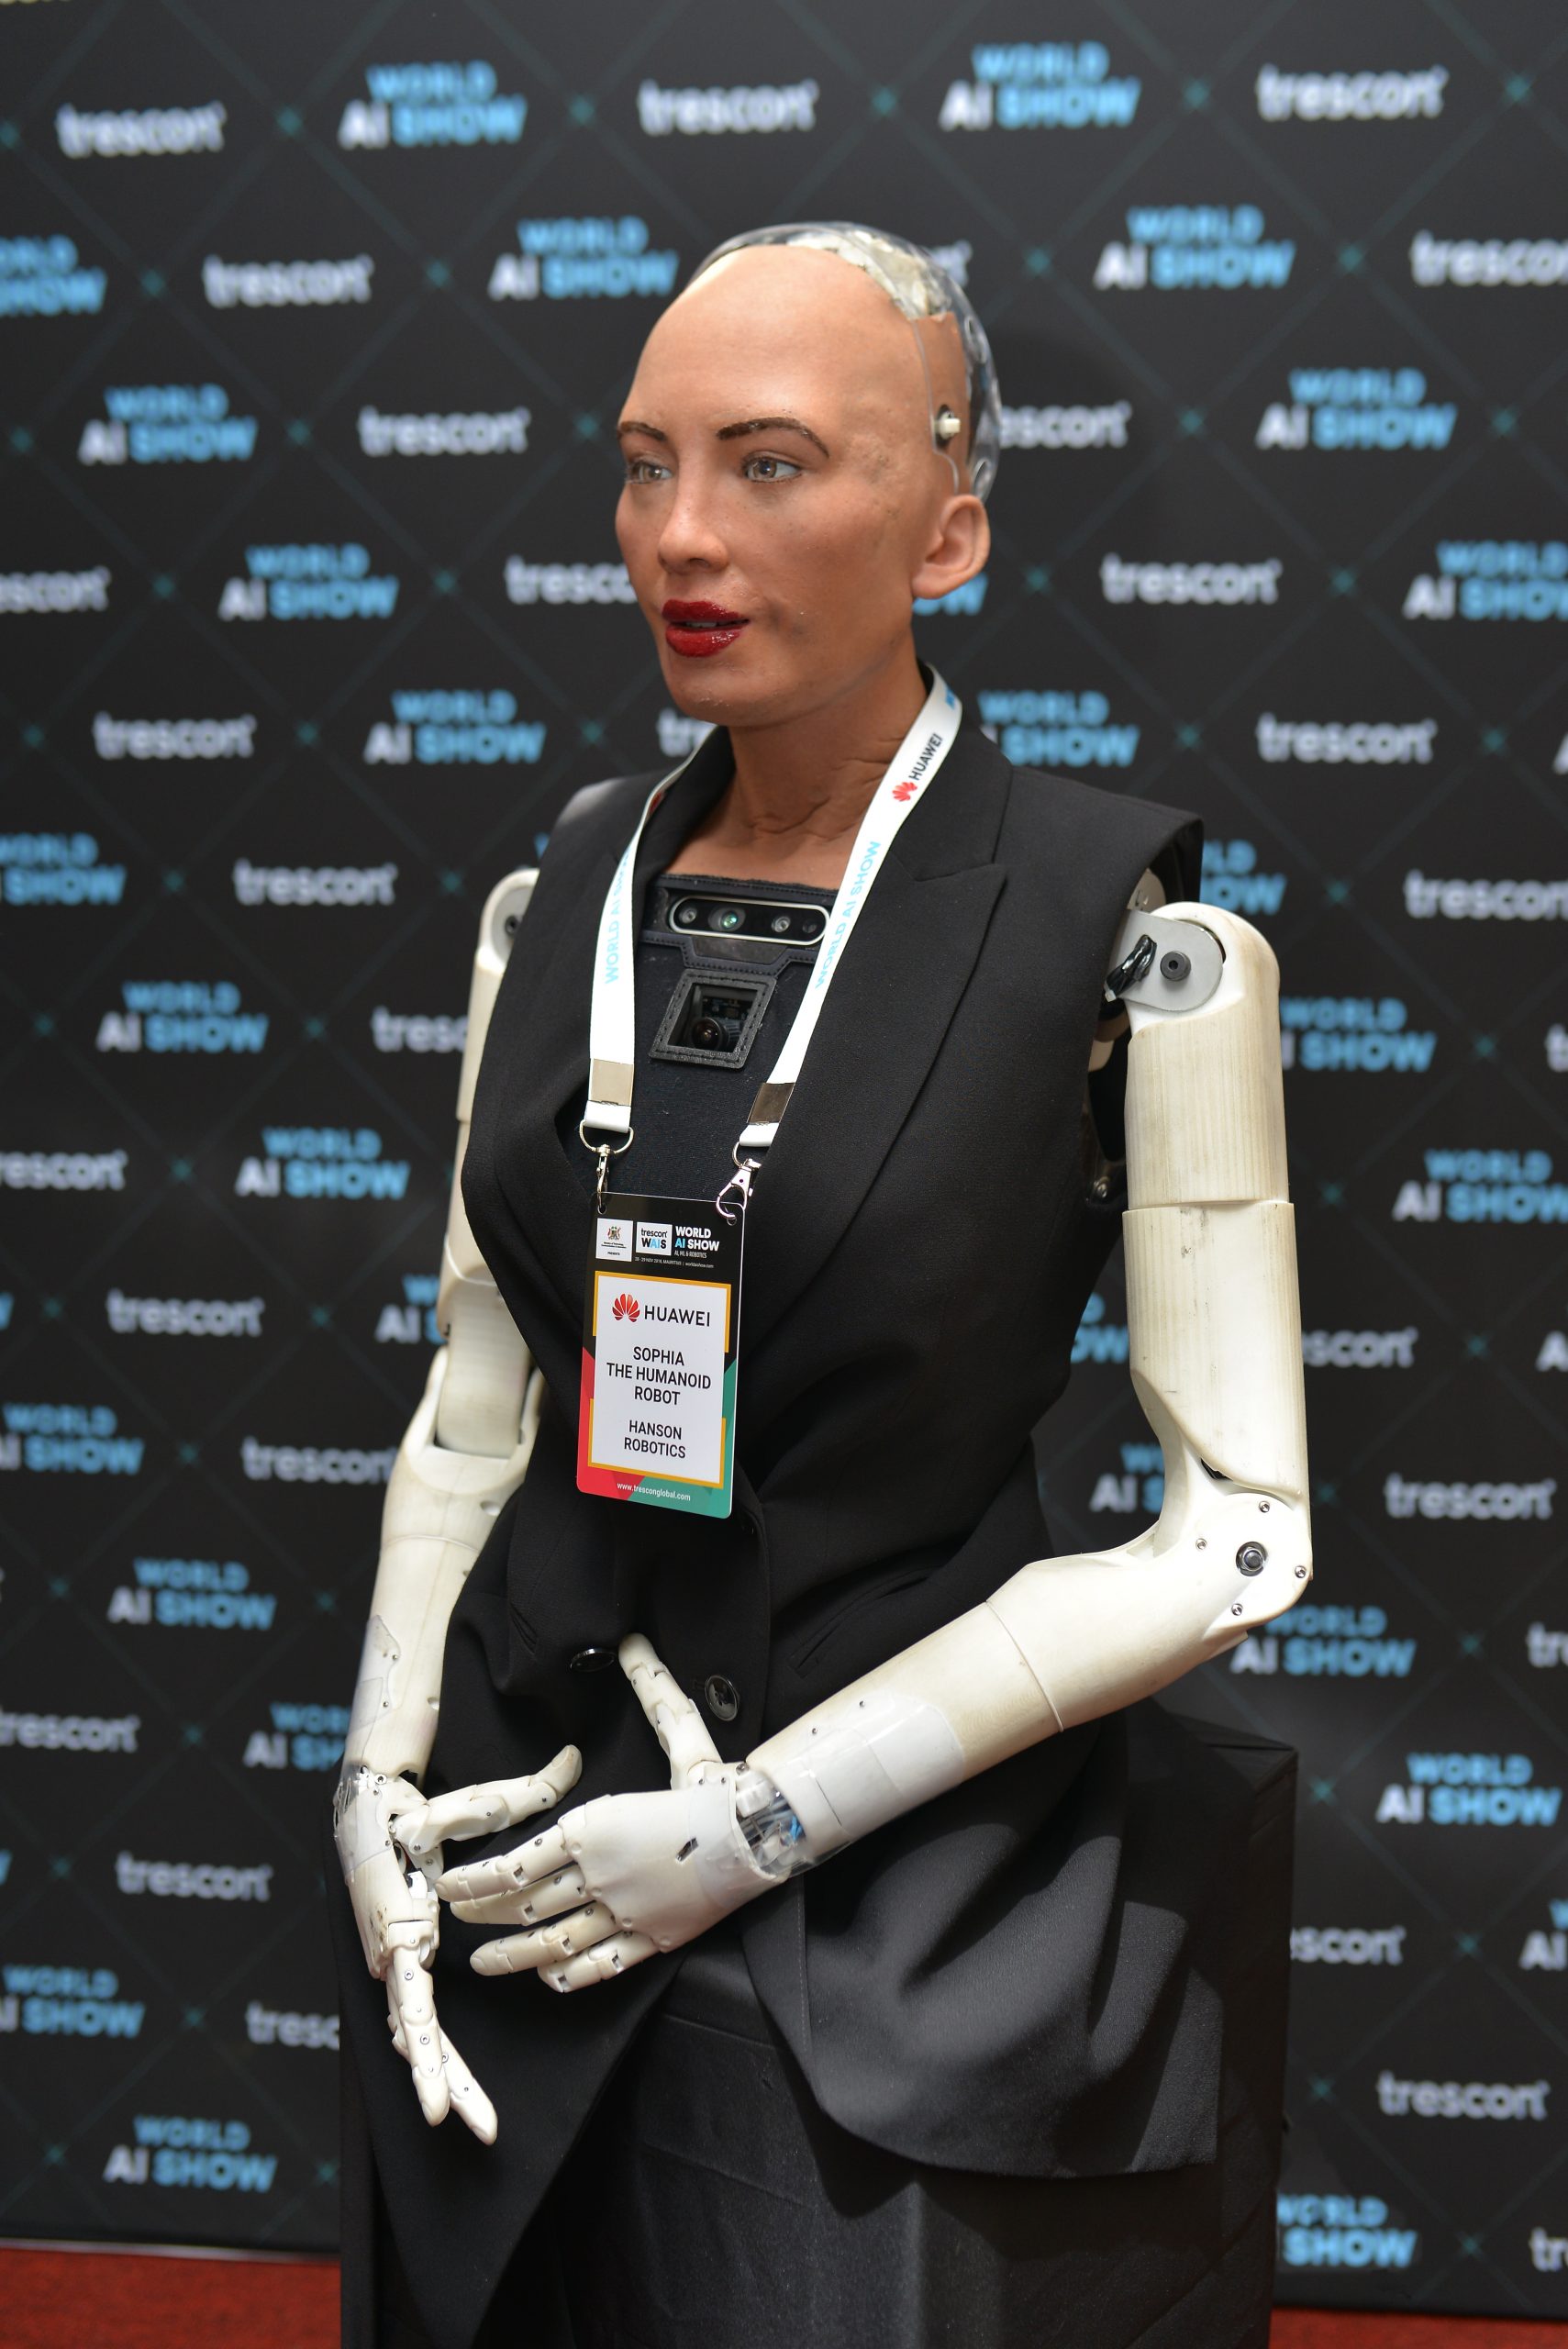 Sophia the humanoid robot